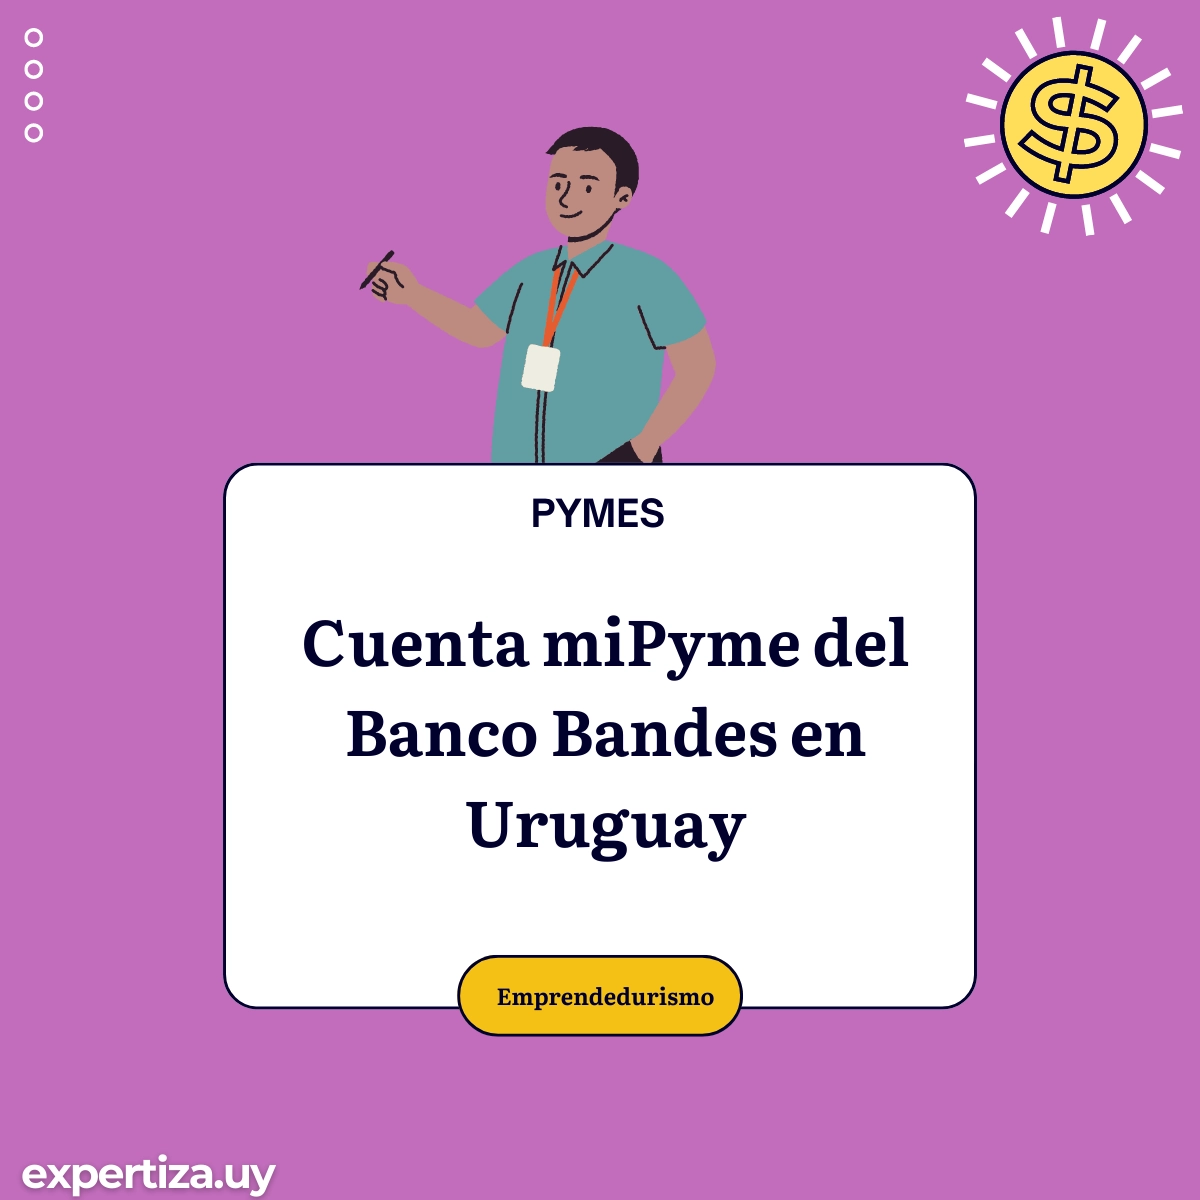 Cuenta miPyme del Banco Bandes en Uruguay.